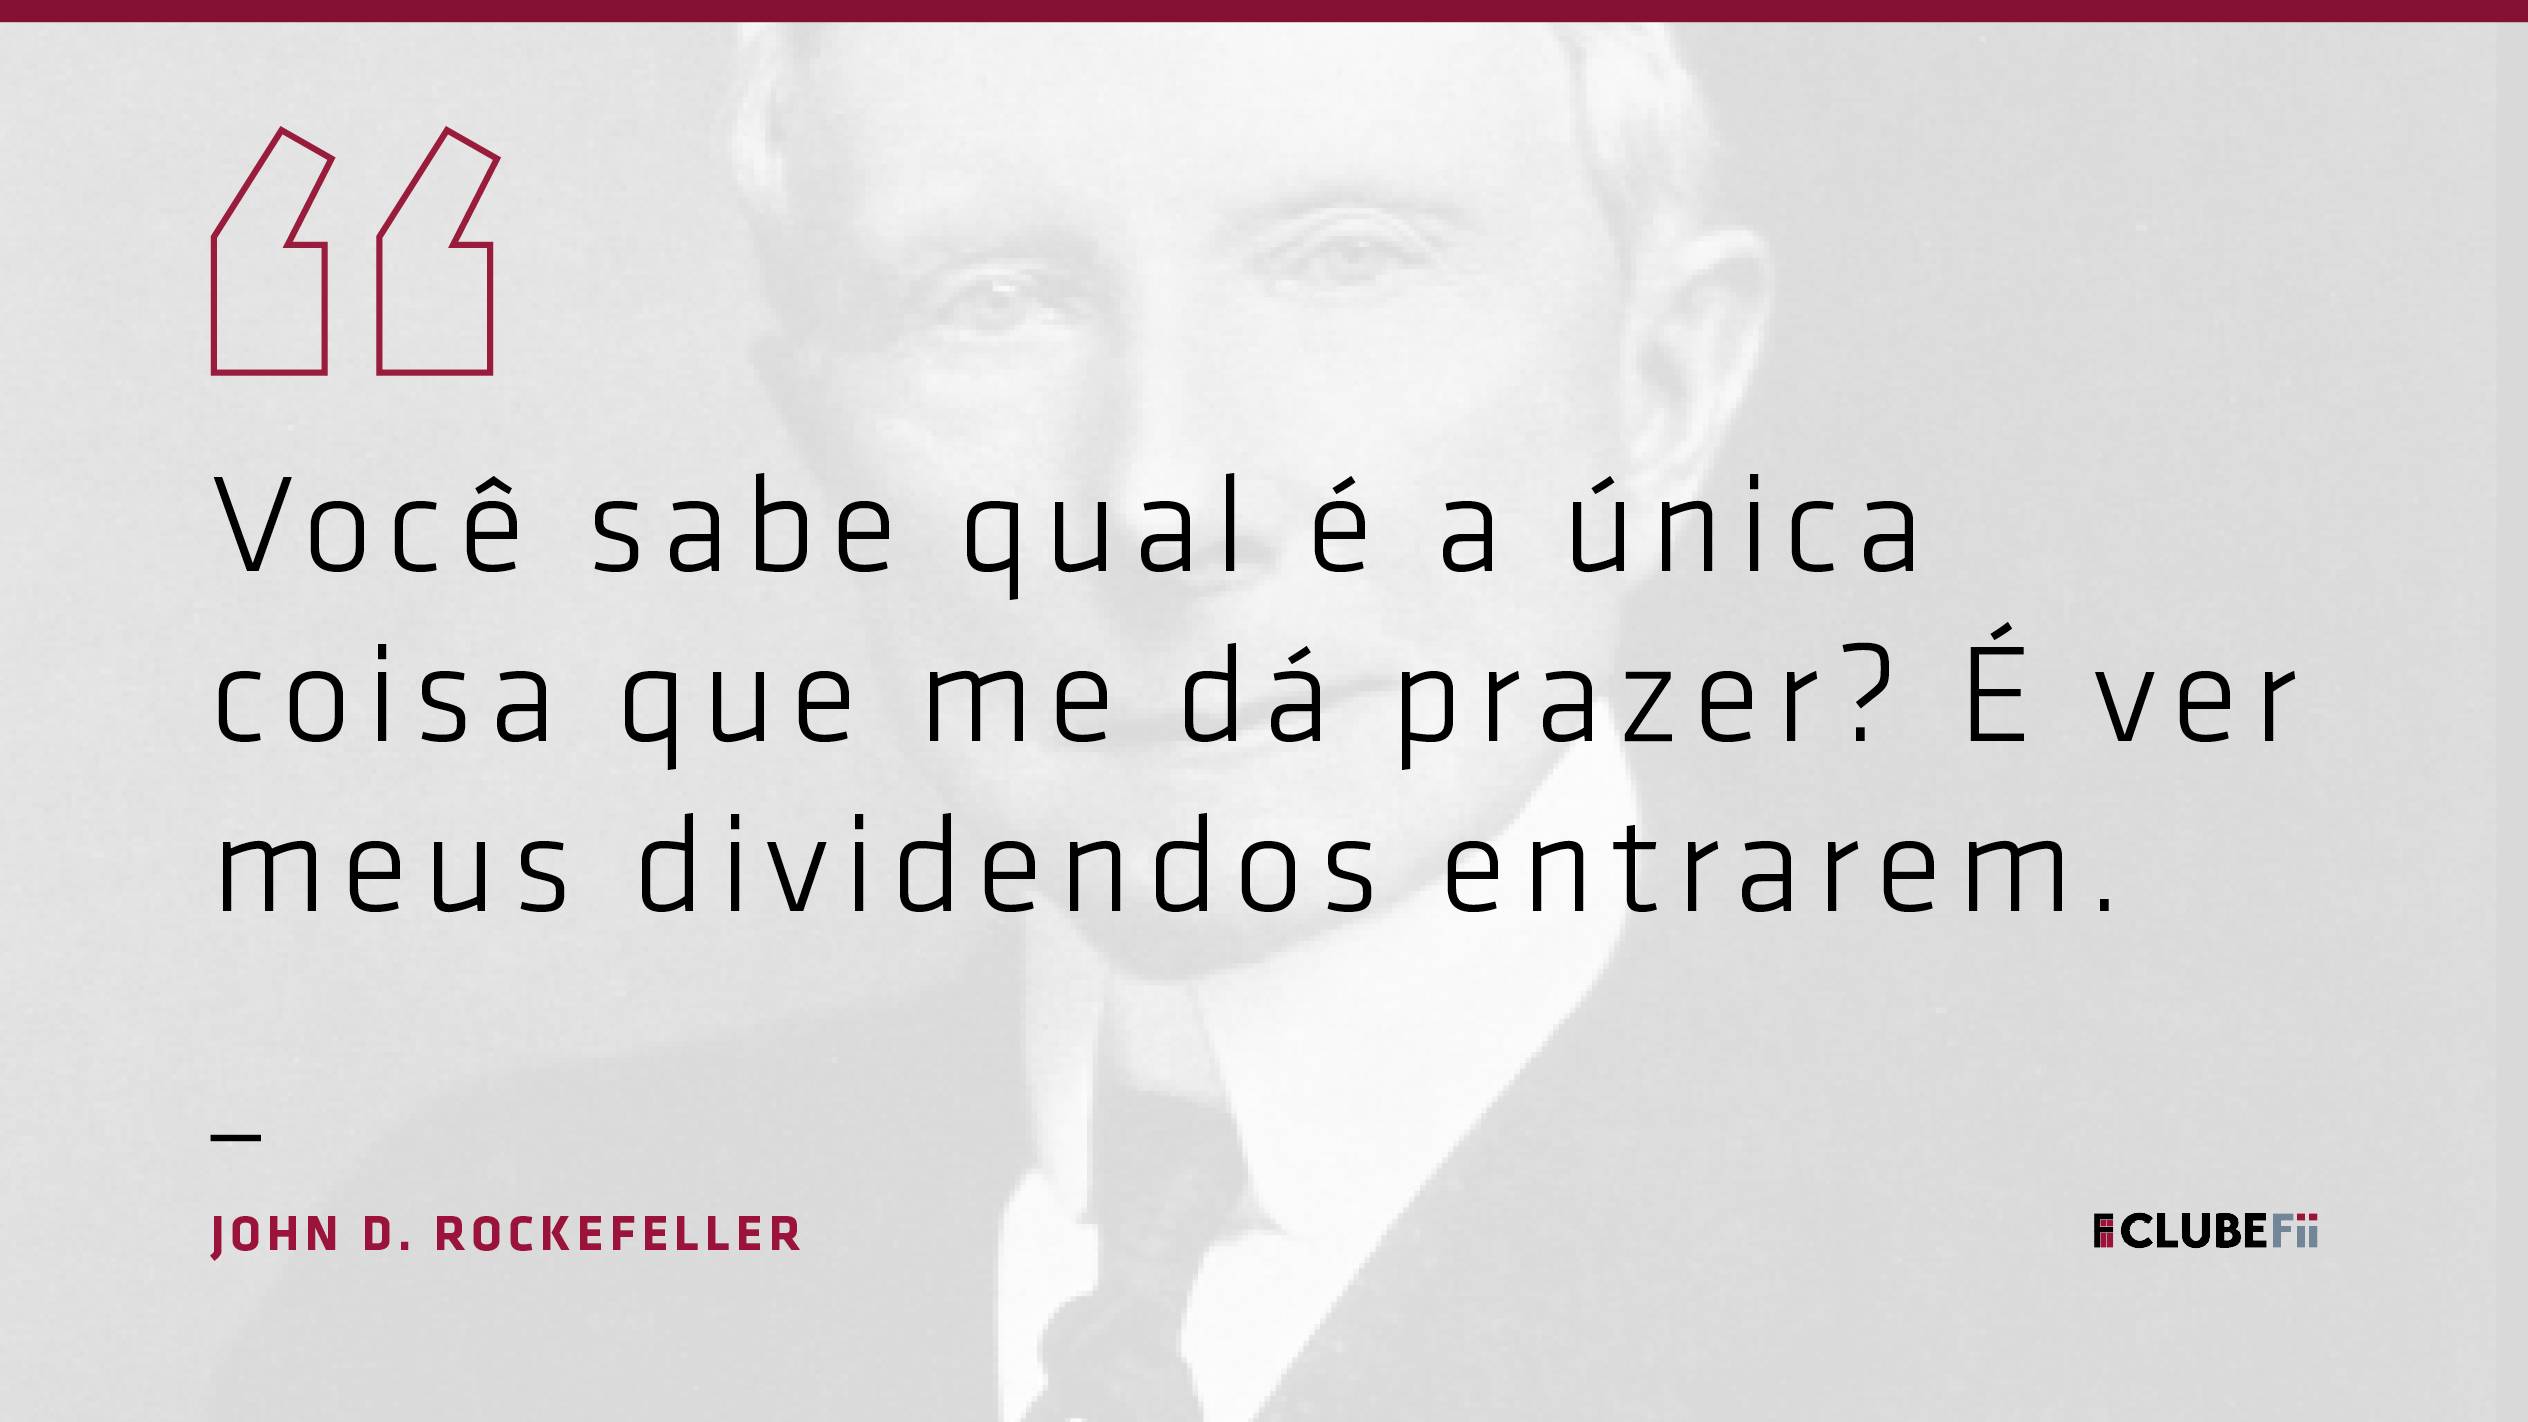 Clube FII on X: John D. Rockefeller (08/07/1839 - 23/05/1937) foi um  investidor e magnata do petróleo. Quando faleceu, em 1937, sua fortuna era  estimada em US$ 1,4 bilhão, cerca de 1,8%